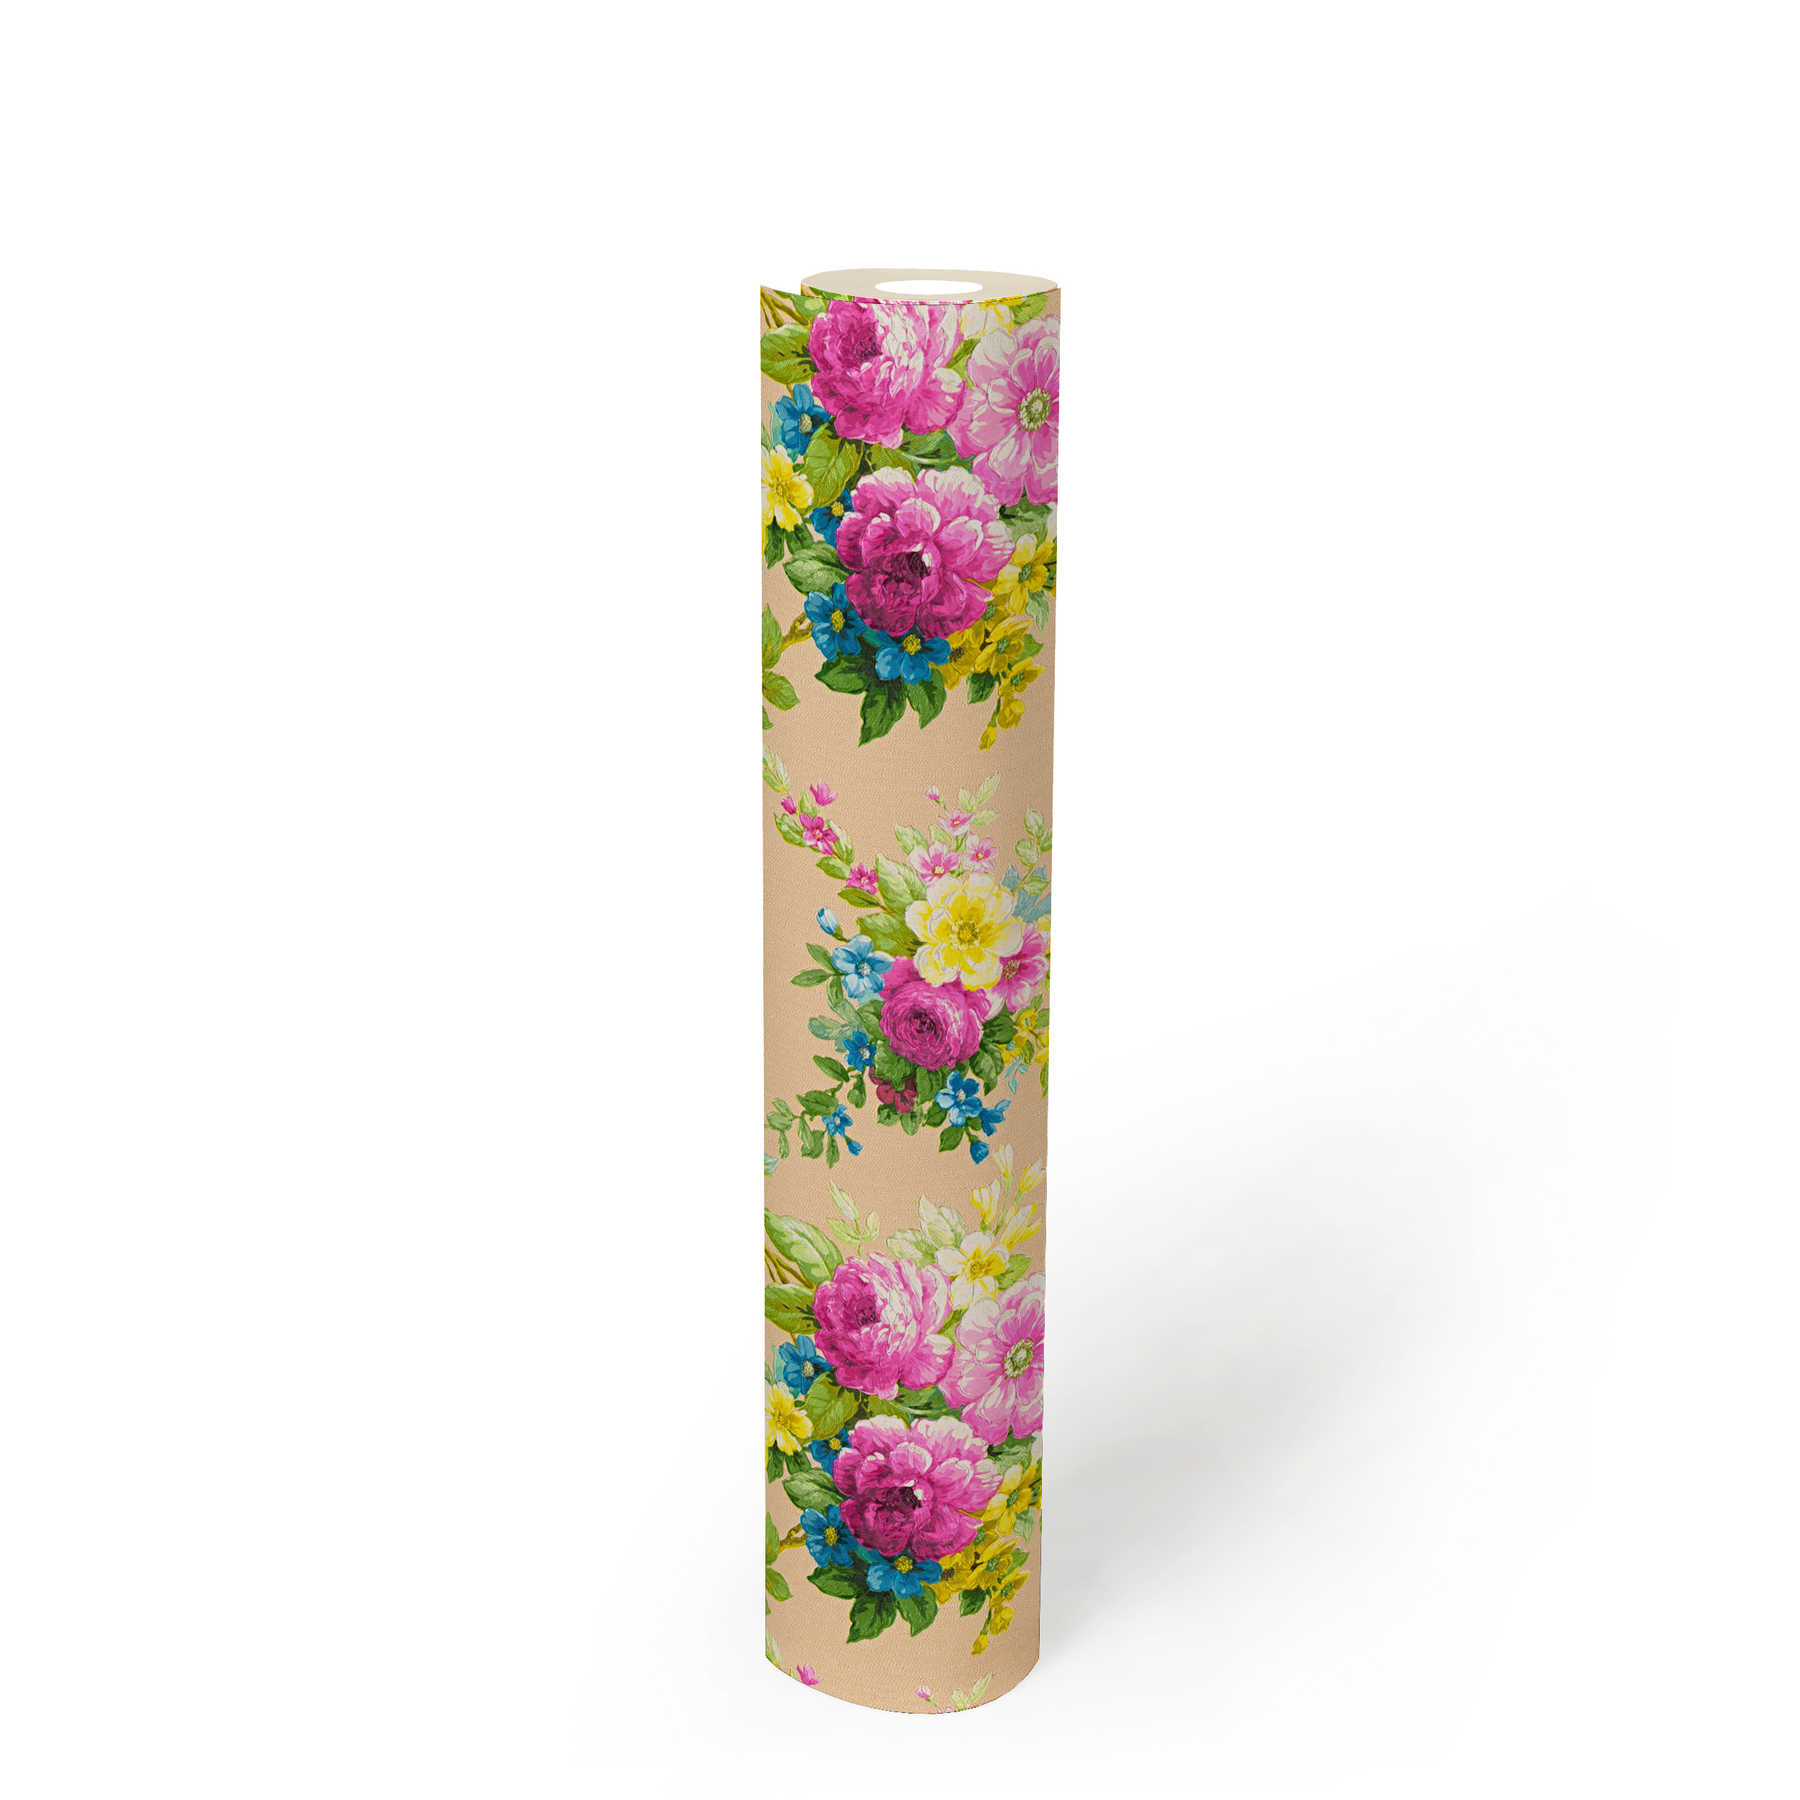             Behang Floral Decor bloemornament met metaaleffect - veelkleurig
        